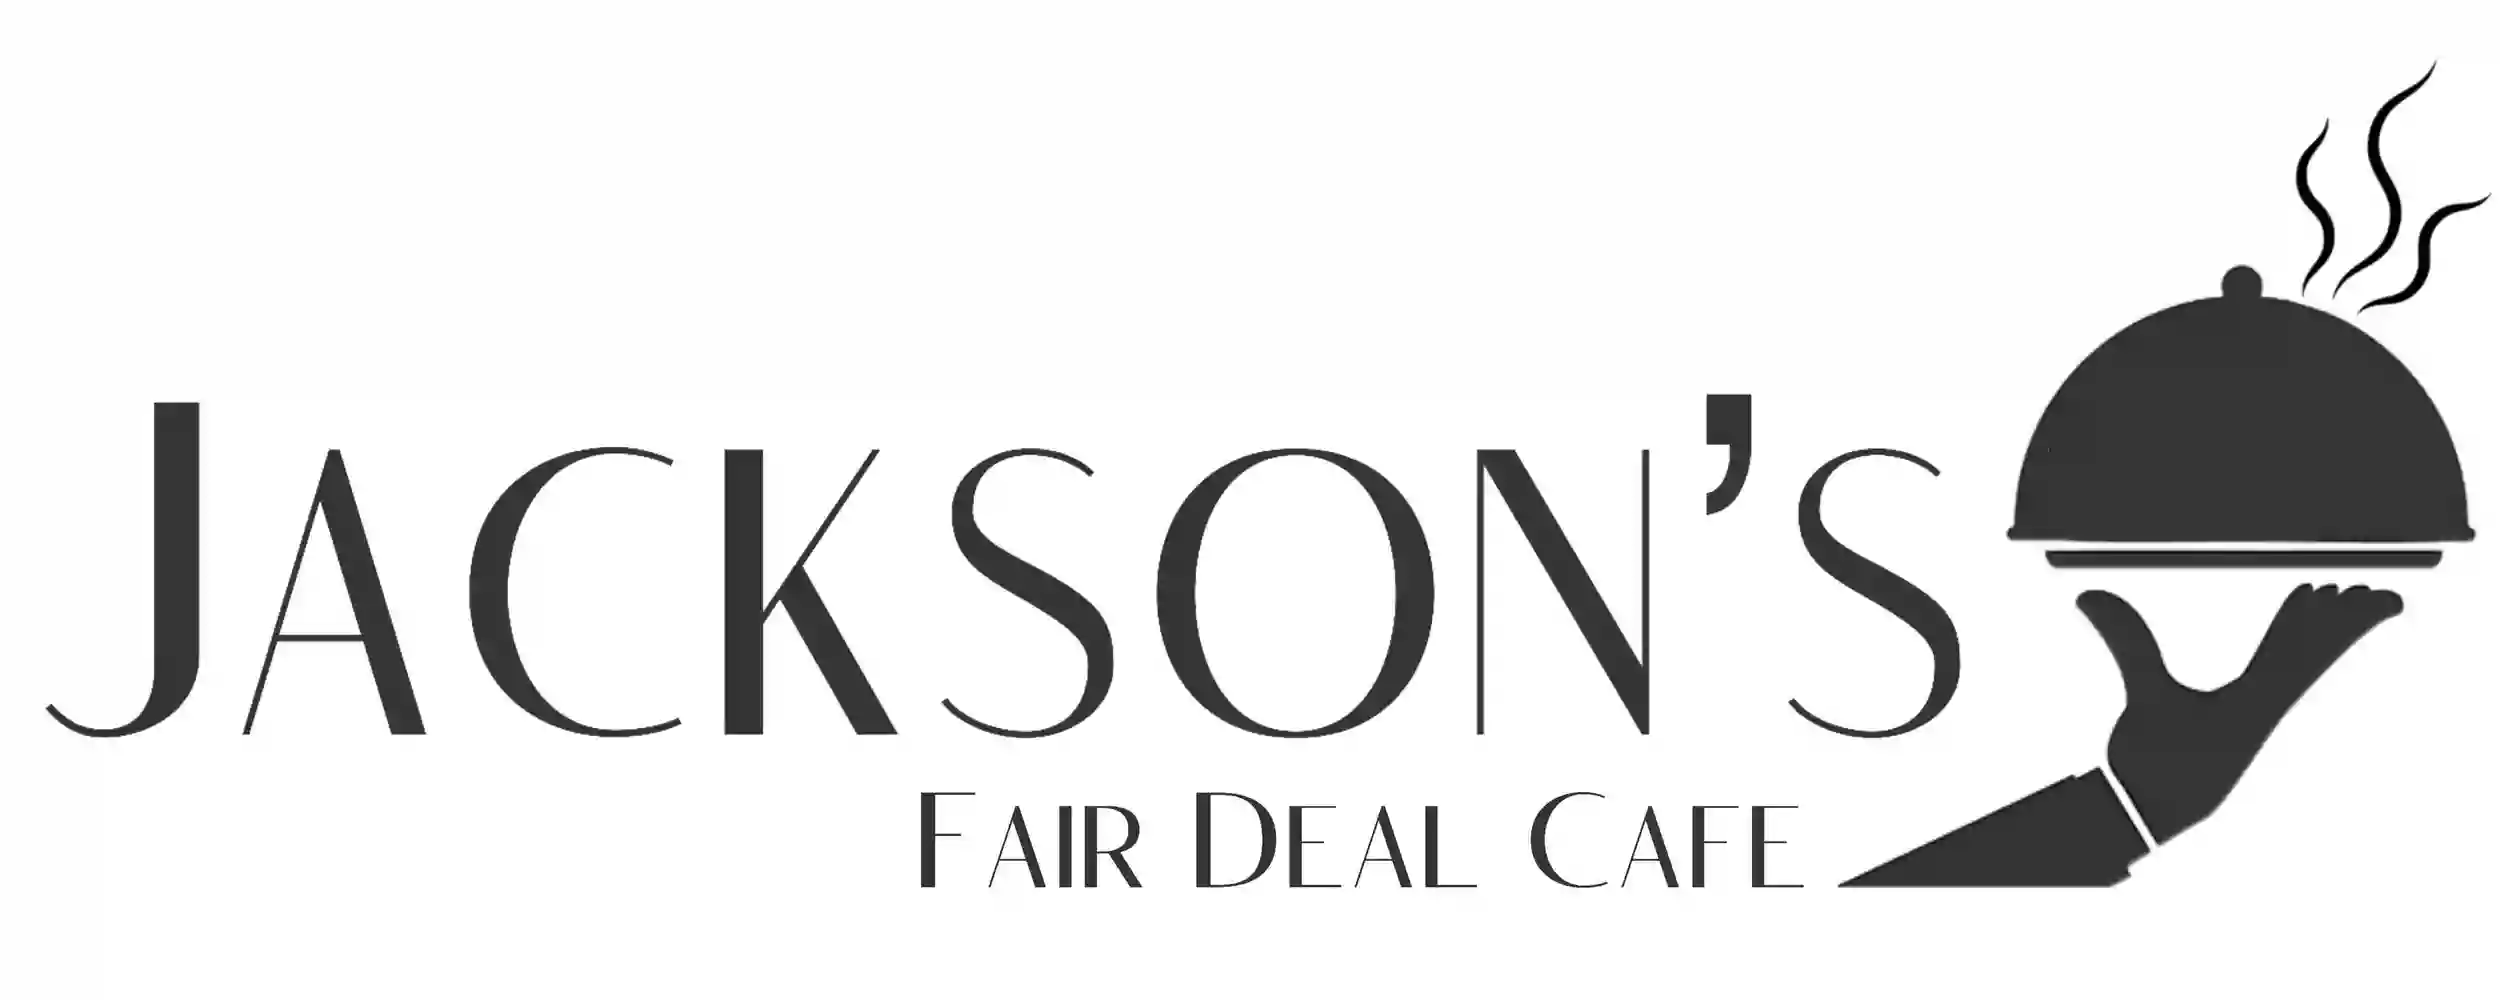 Jackson's Fair Deal Café